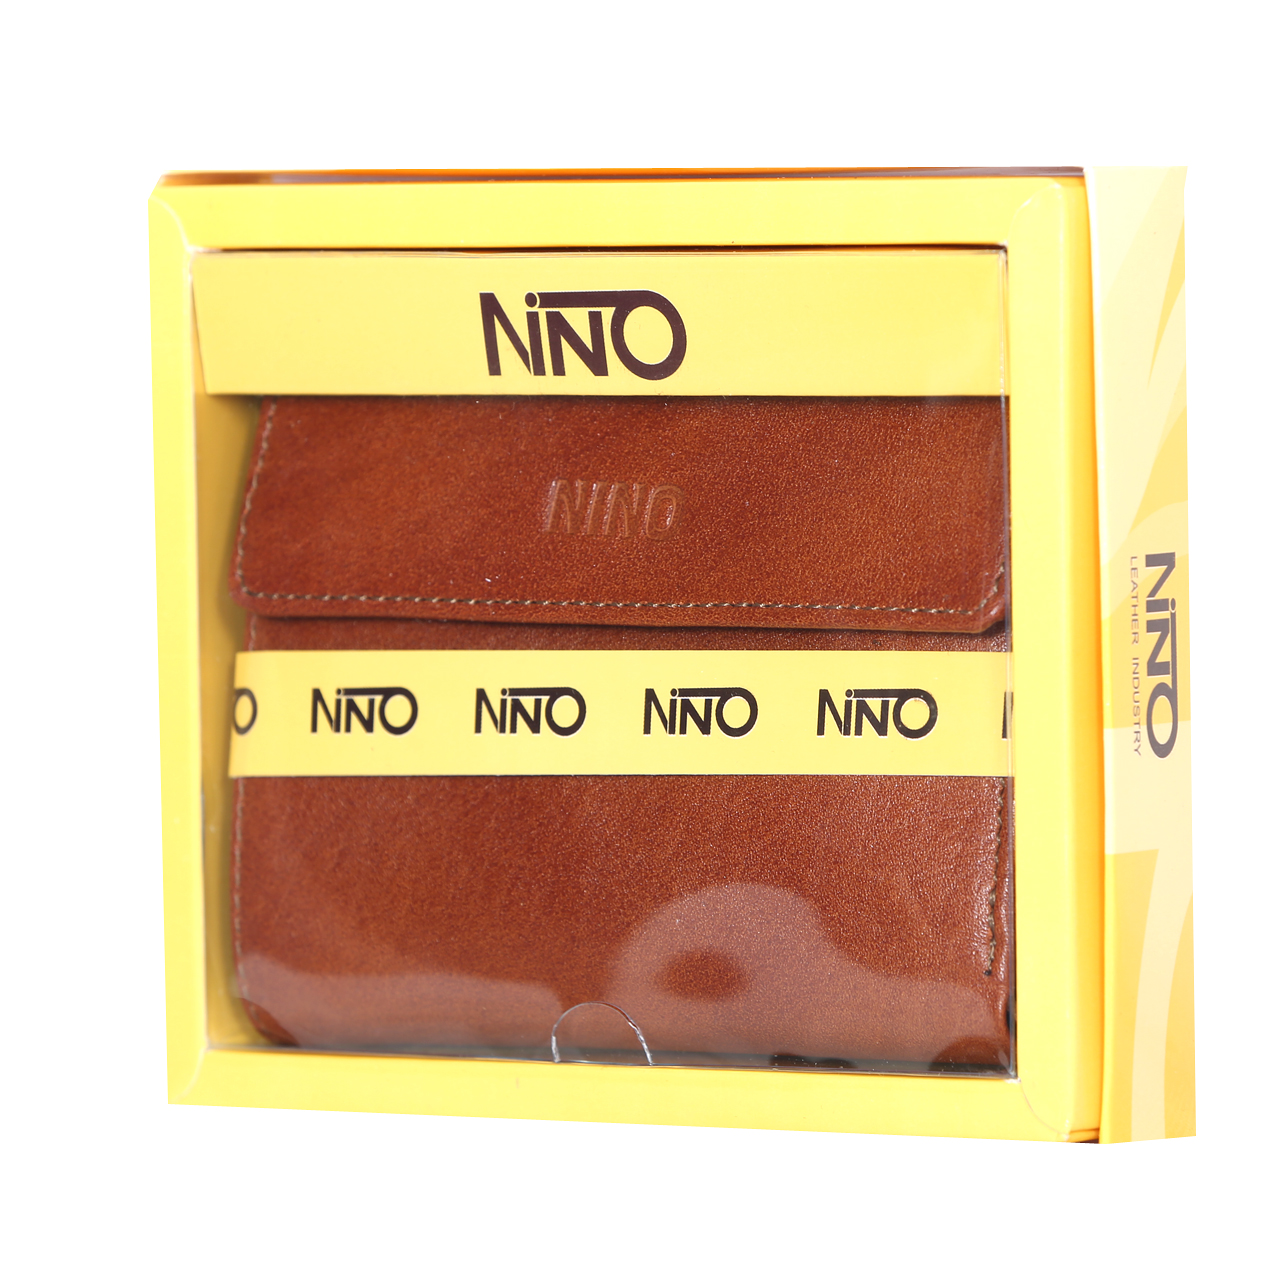  کیف پول جاکارتی چرمی نینو مدل SBN2815